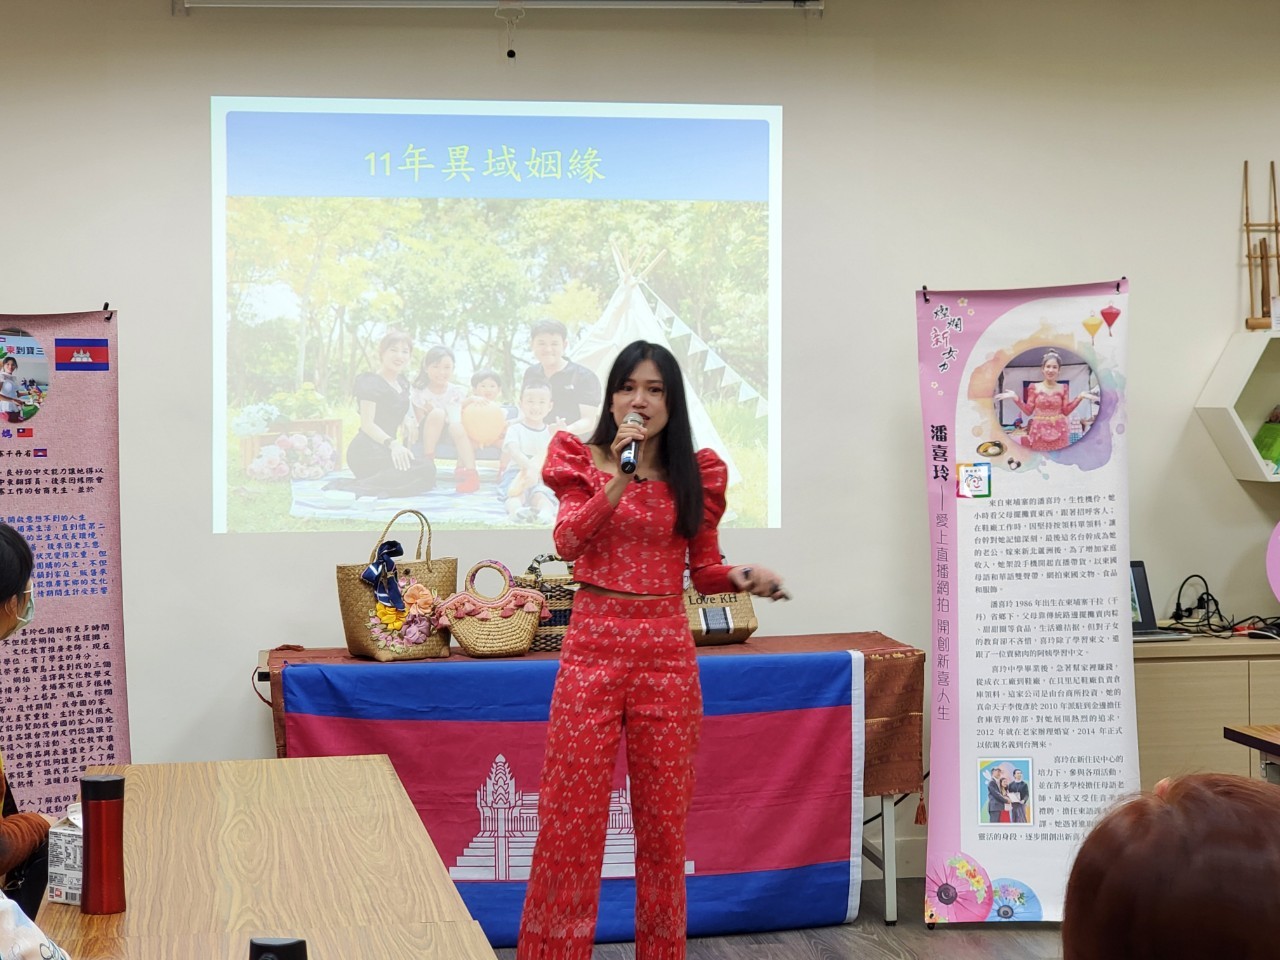 Dengan dukungan Proyek Pembangunan Impian Departemen Imigrasi, Pan Xiling mulai mengajar kelas dan mengajarkan teknik menenun tangan.  (Sumber foto : Sanchong New Immigrant Family dan Woman Service Center of New Taipei